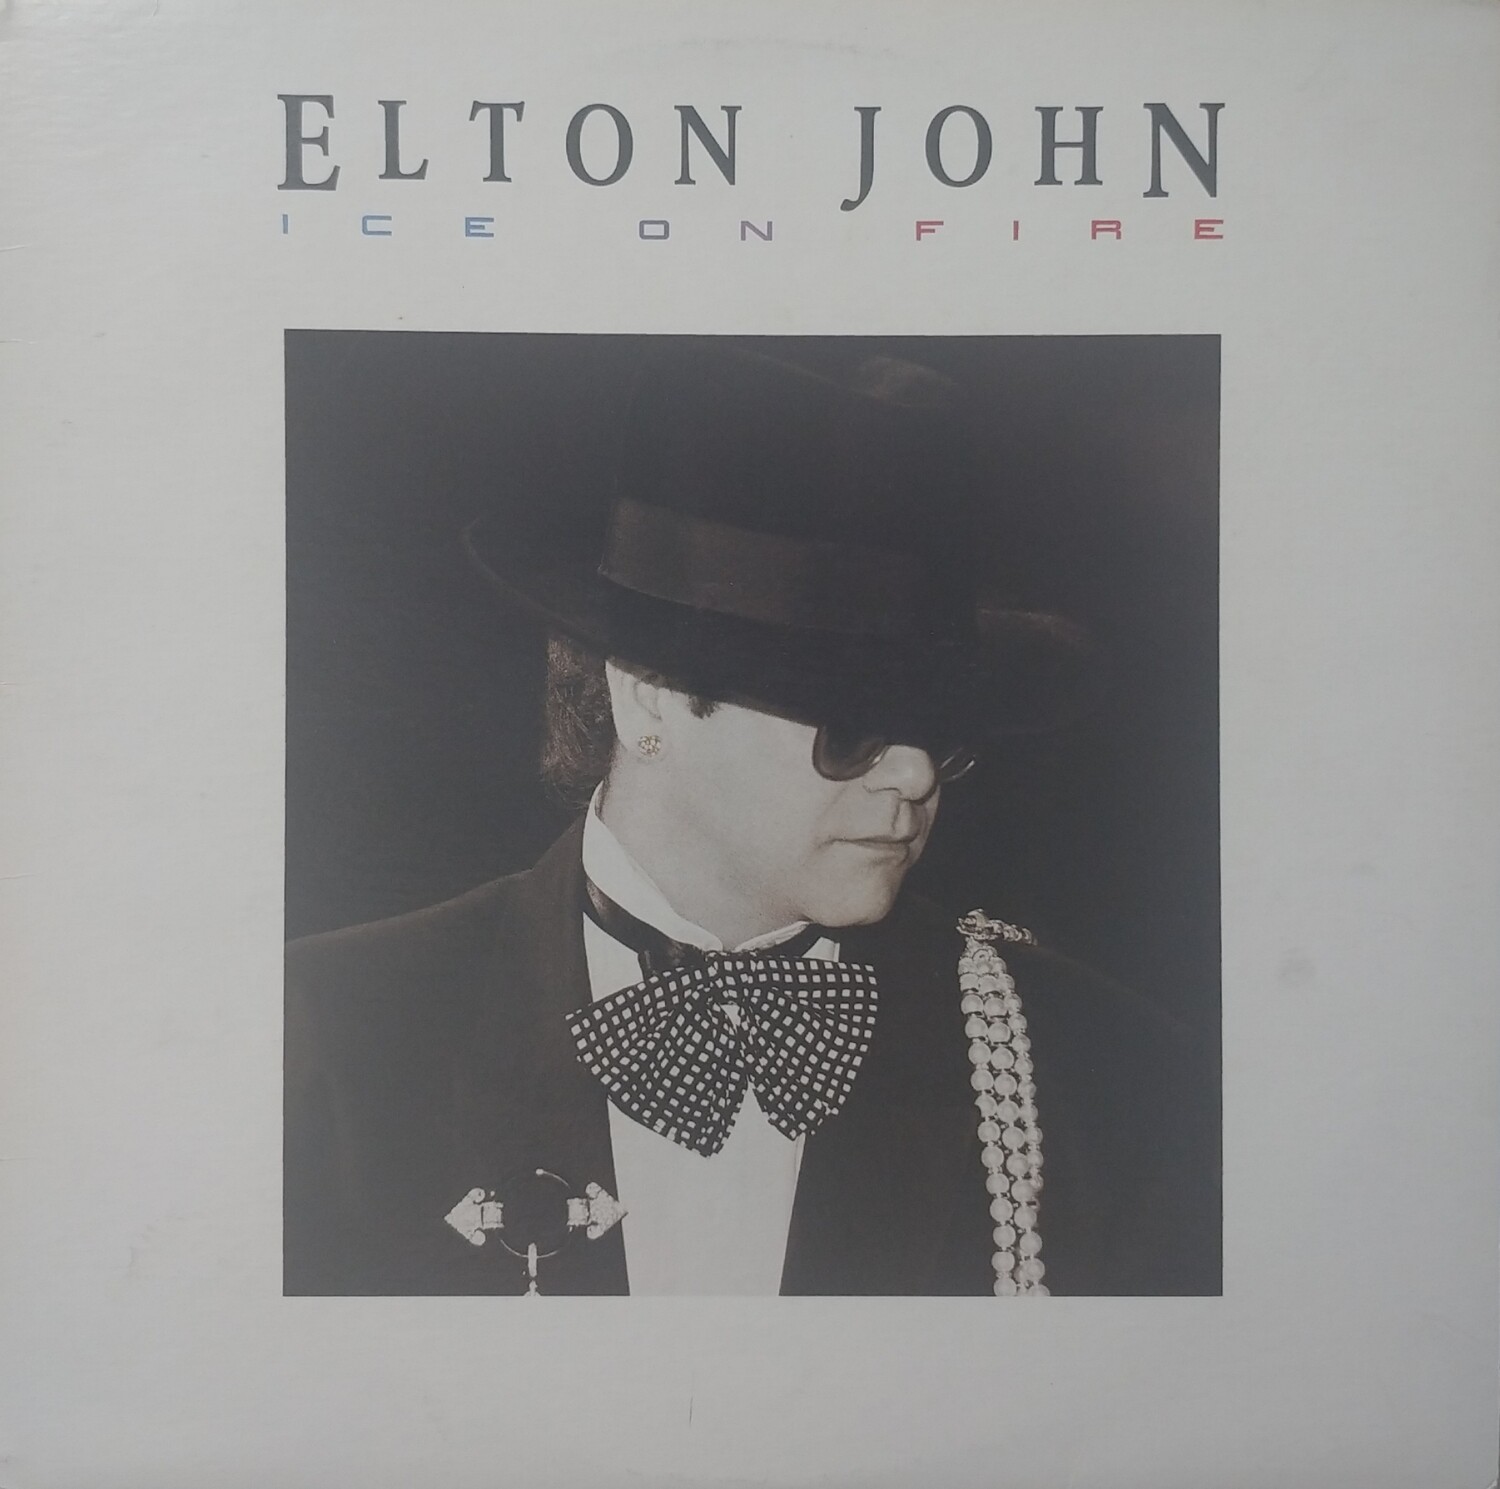 Elton John - Ice on fire